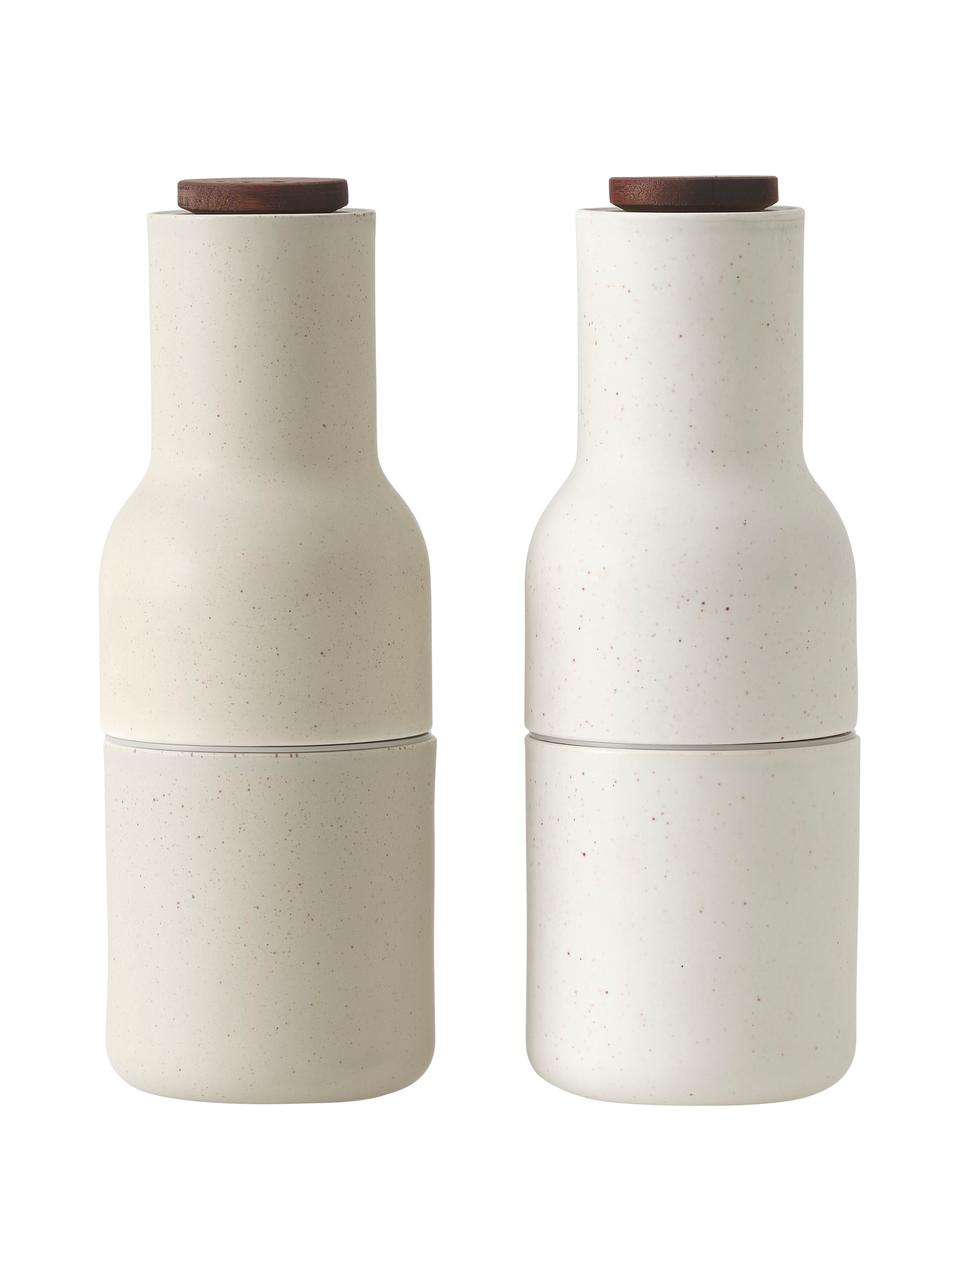 Designer zout- en pepermolen van keramiek Bottle Grinder met walnootdeksel, set van 2, Frame: keramiek, Deksel: walnootkleurig, Greige, wit, walnoothout, Ø 8 x H 21 cm